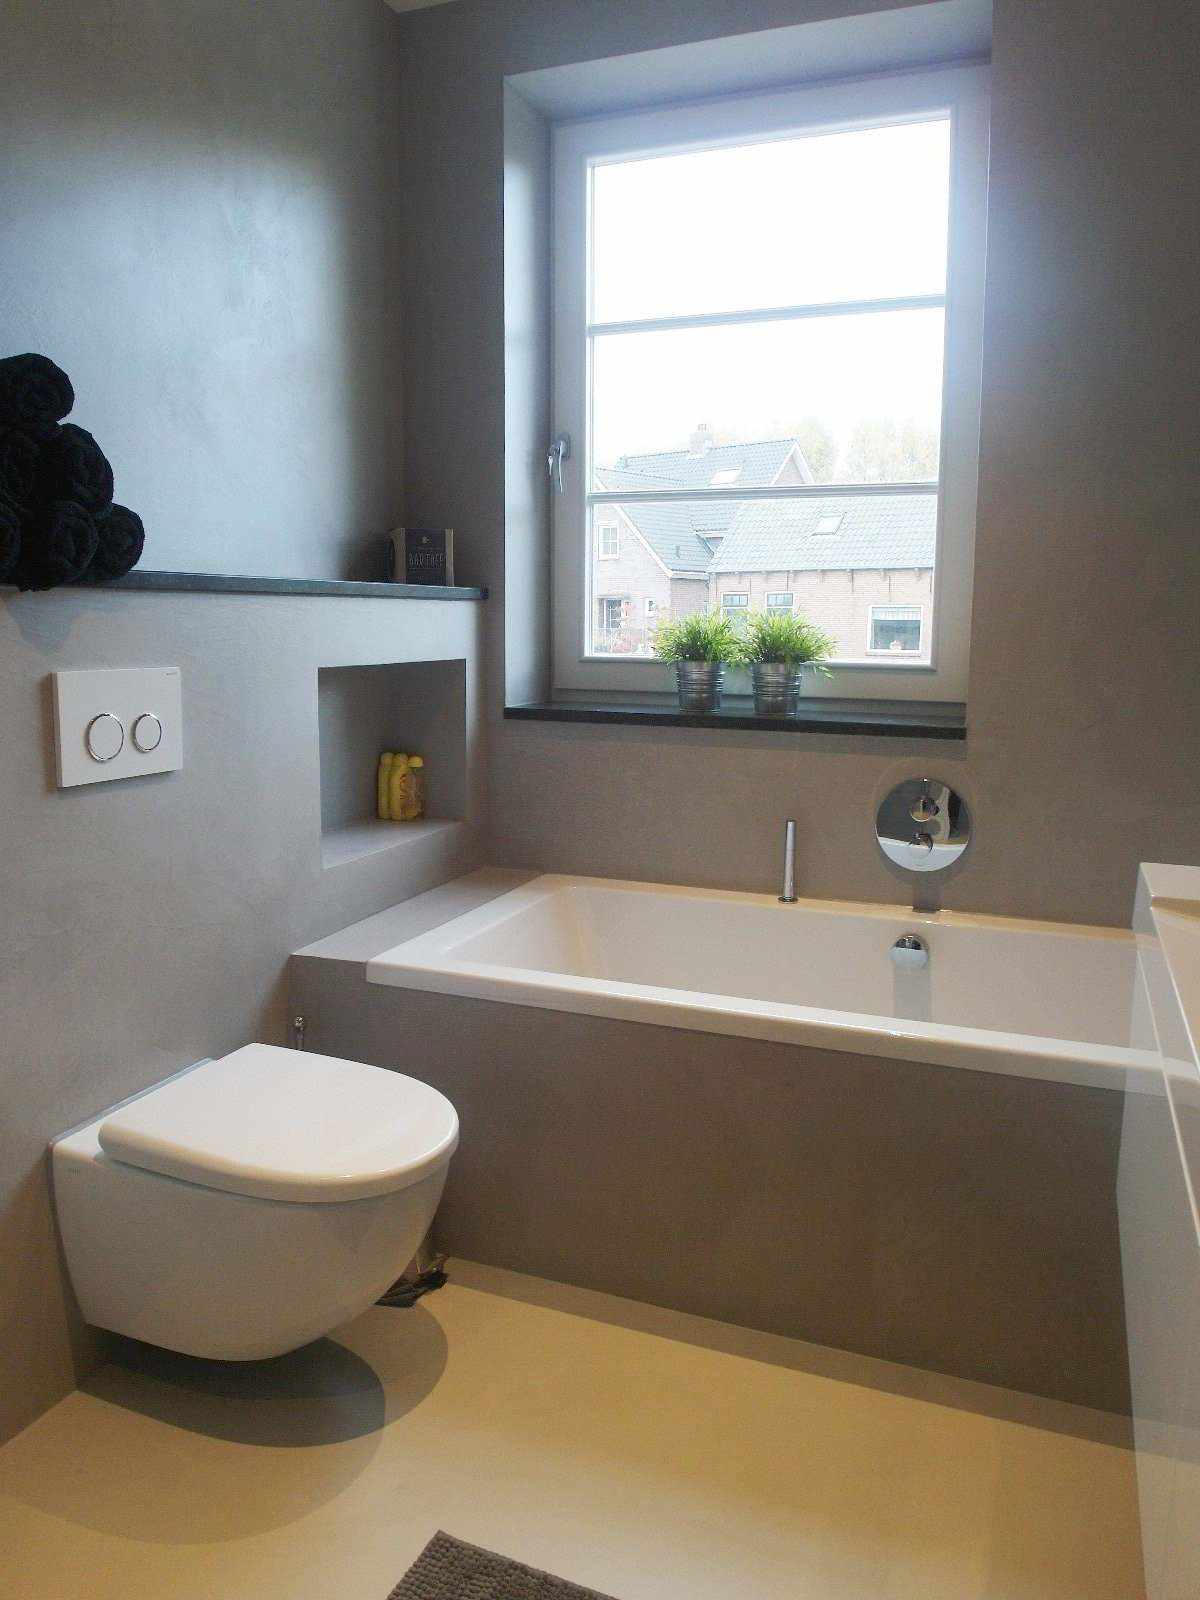 Microcemento gris en la pared y el mueble de un baño en Holanda en el proyecto Decas.